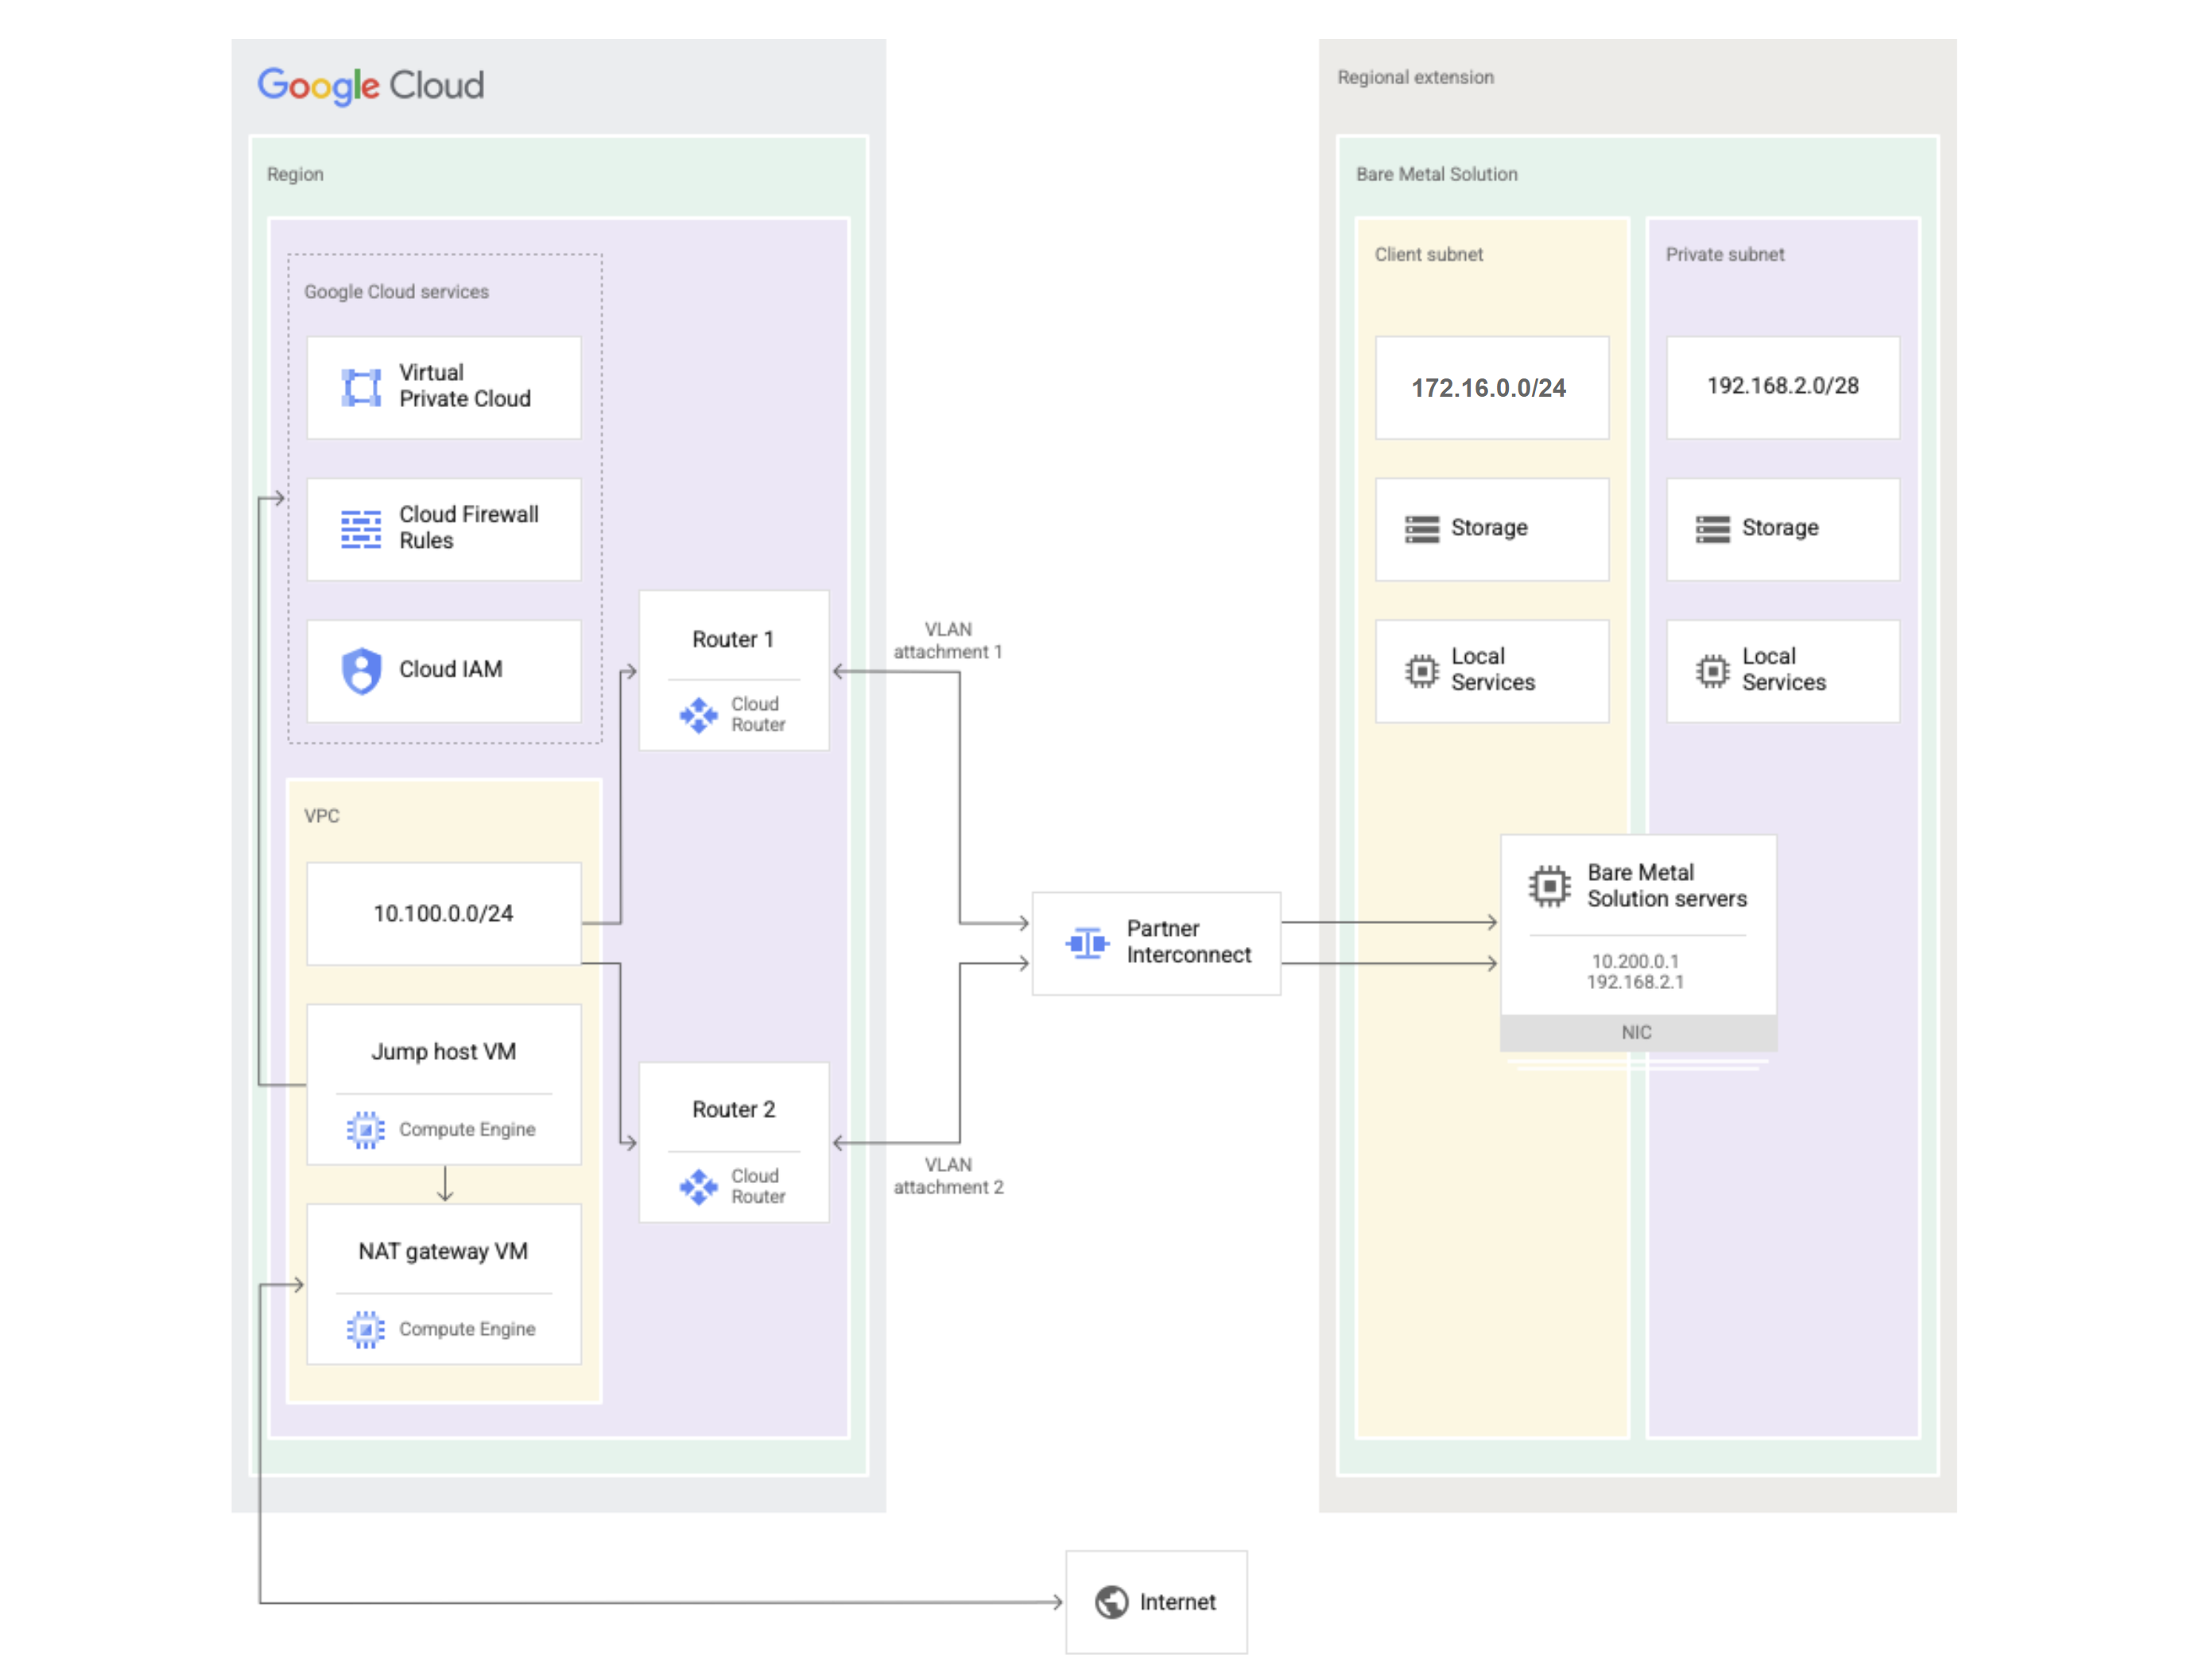 Diagramma Bare Metal Solution che mostra quali componenti si trovano in Google Cloud e quali sono nell'estensione di regione Bare Metal Solution.